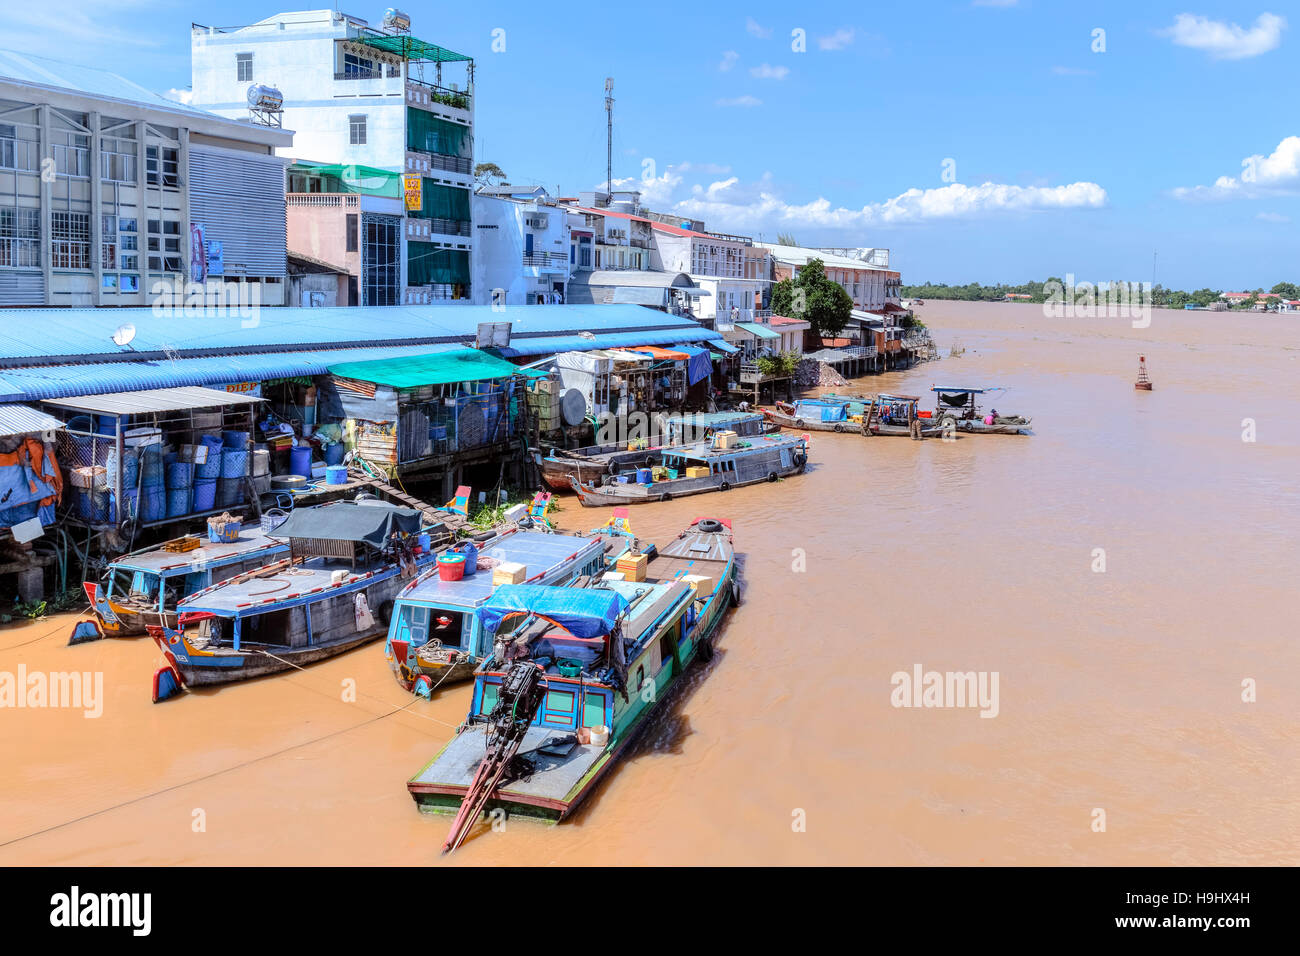 La vie le long du Mékong, dans la région de Vinh Long, Delta du Mékong, Vietnam, Asie Banque D'Images